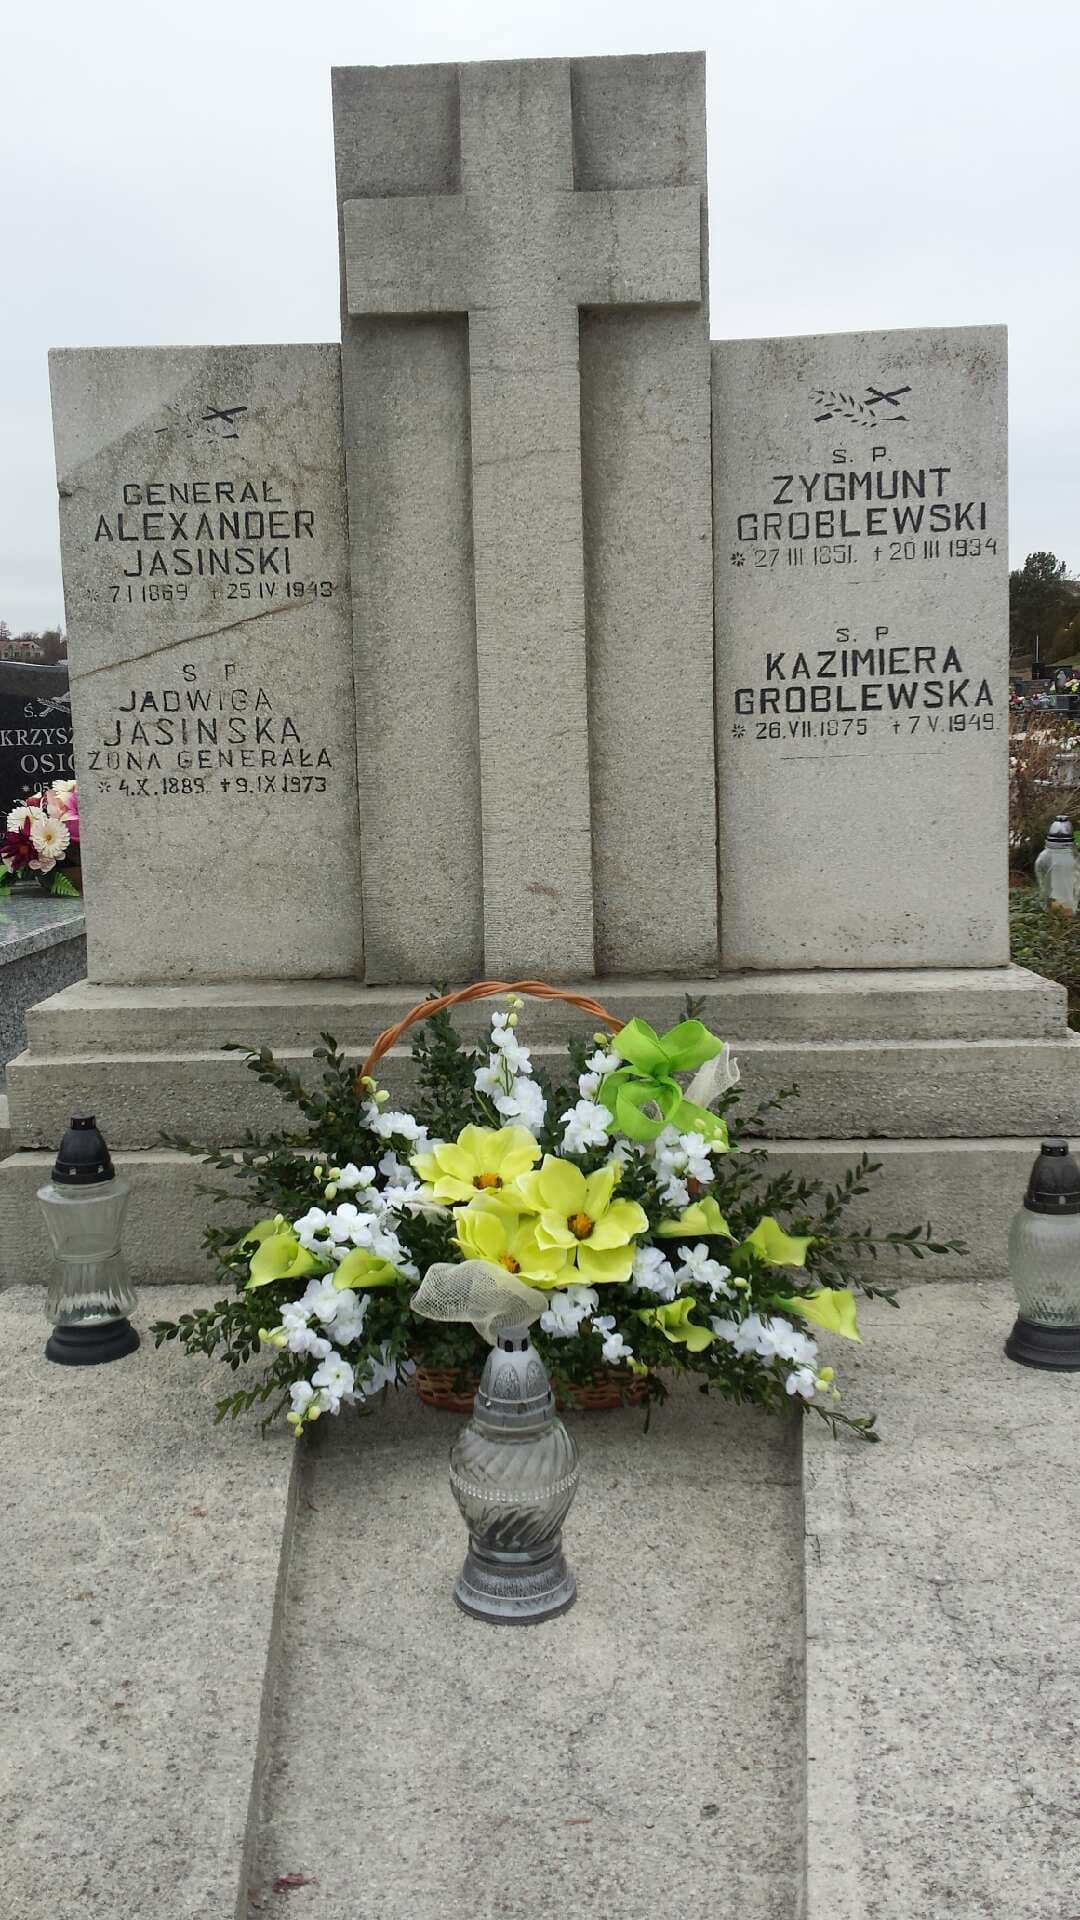 grób Groblewskich